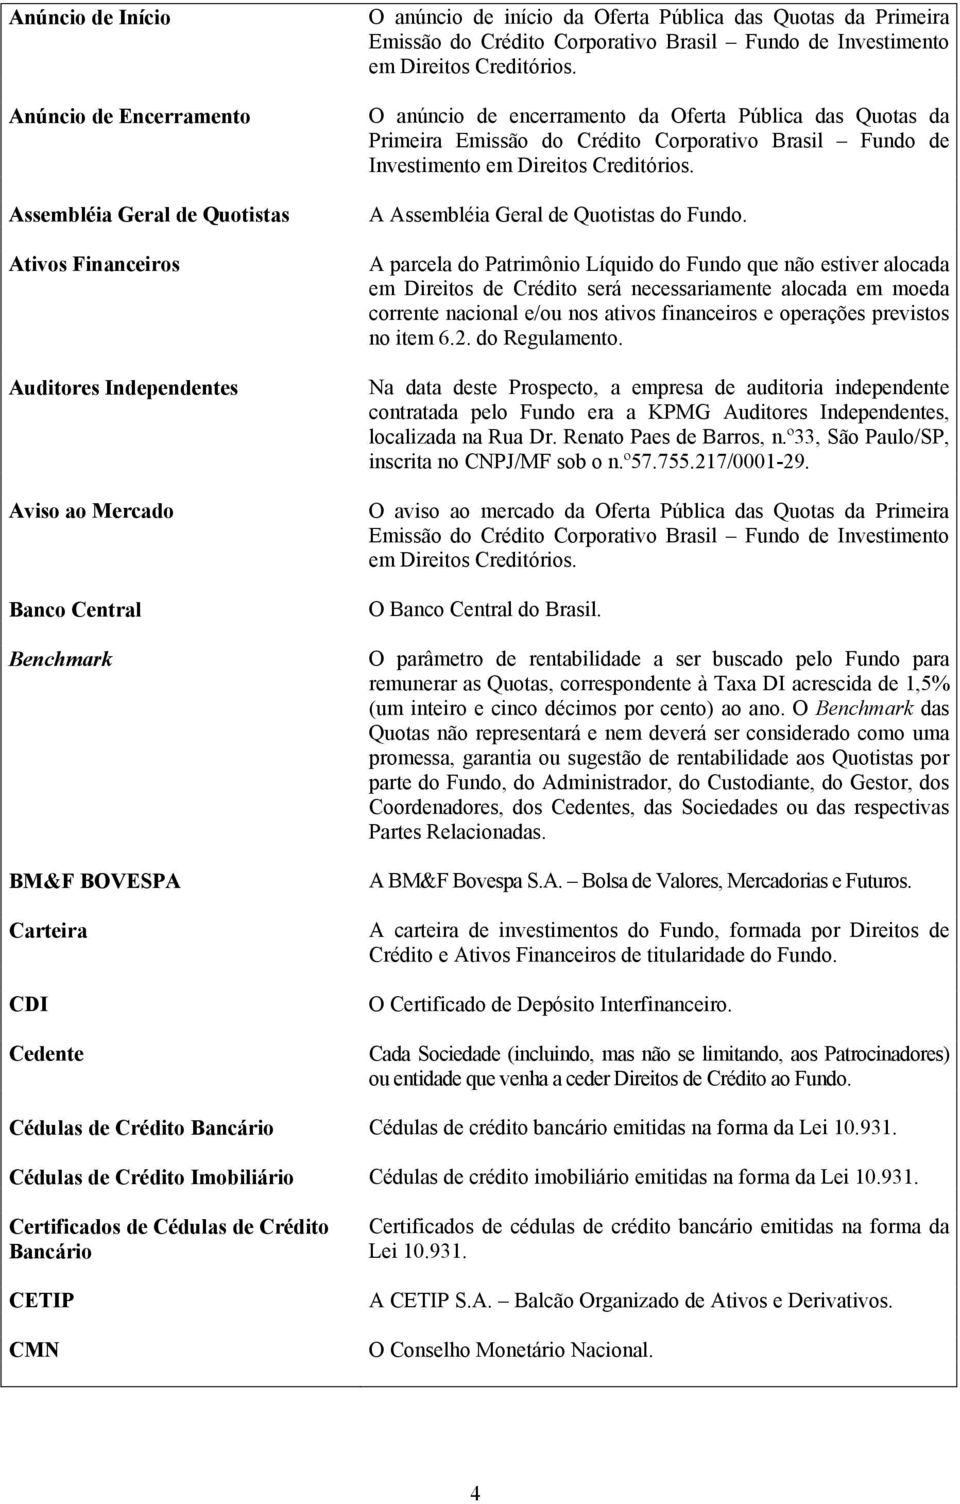 O anúncio de encerramento da Oferta Pública das Quotas da Primeira Emissão do Crédito Corporativo Brasil Fundo de Investimento em Direitos Creditórios. A Assembléia Geral de Quotistas do Fundo.